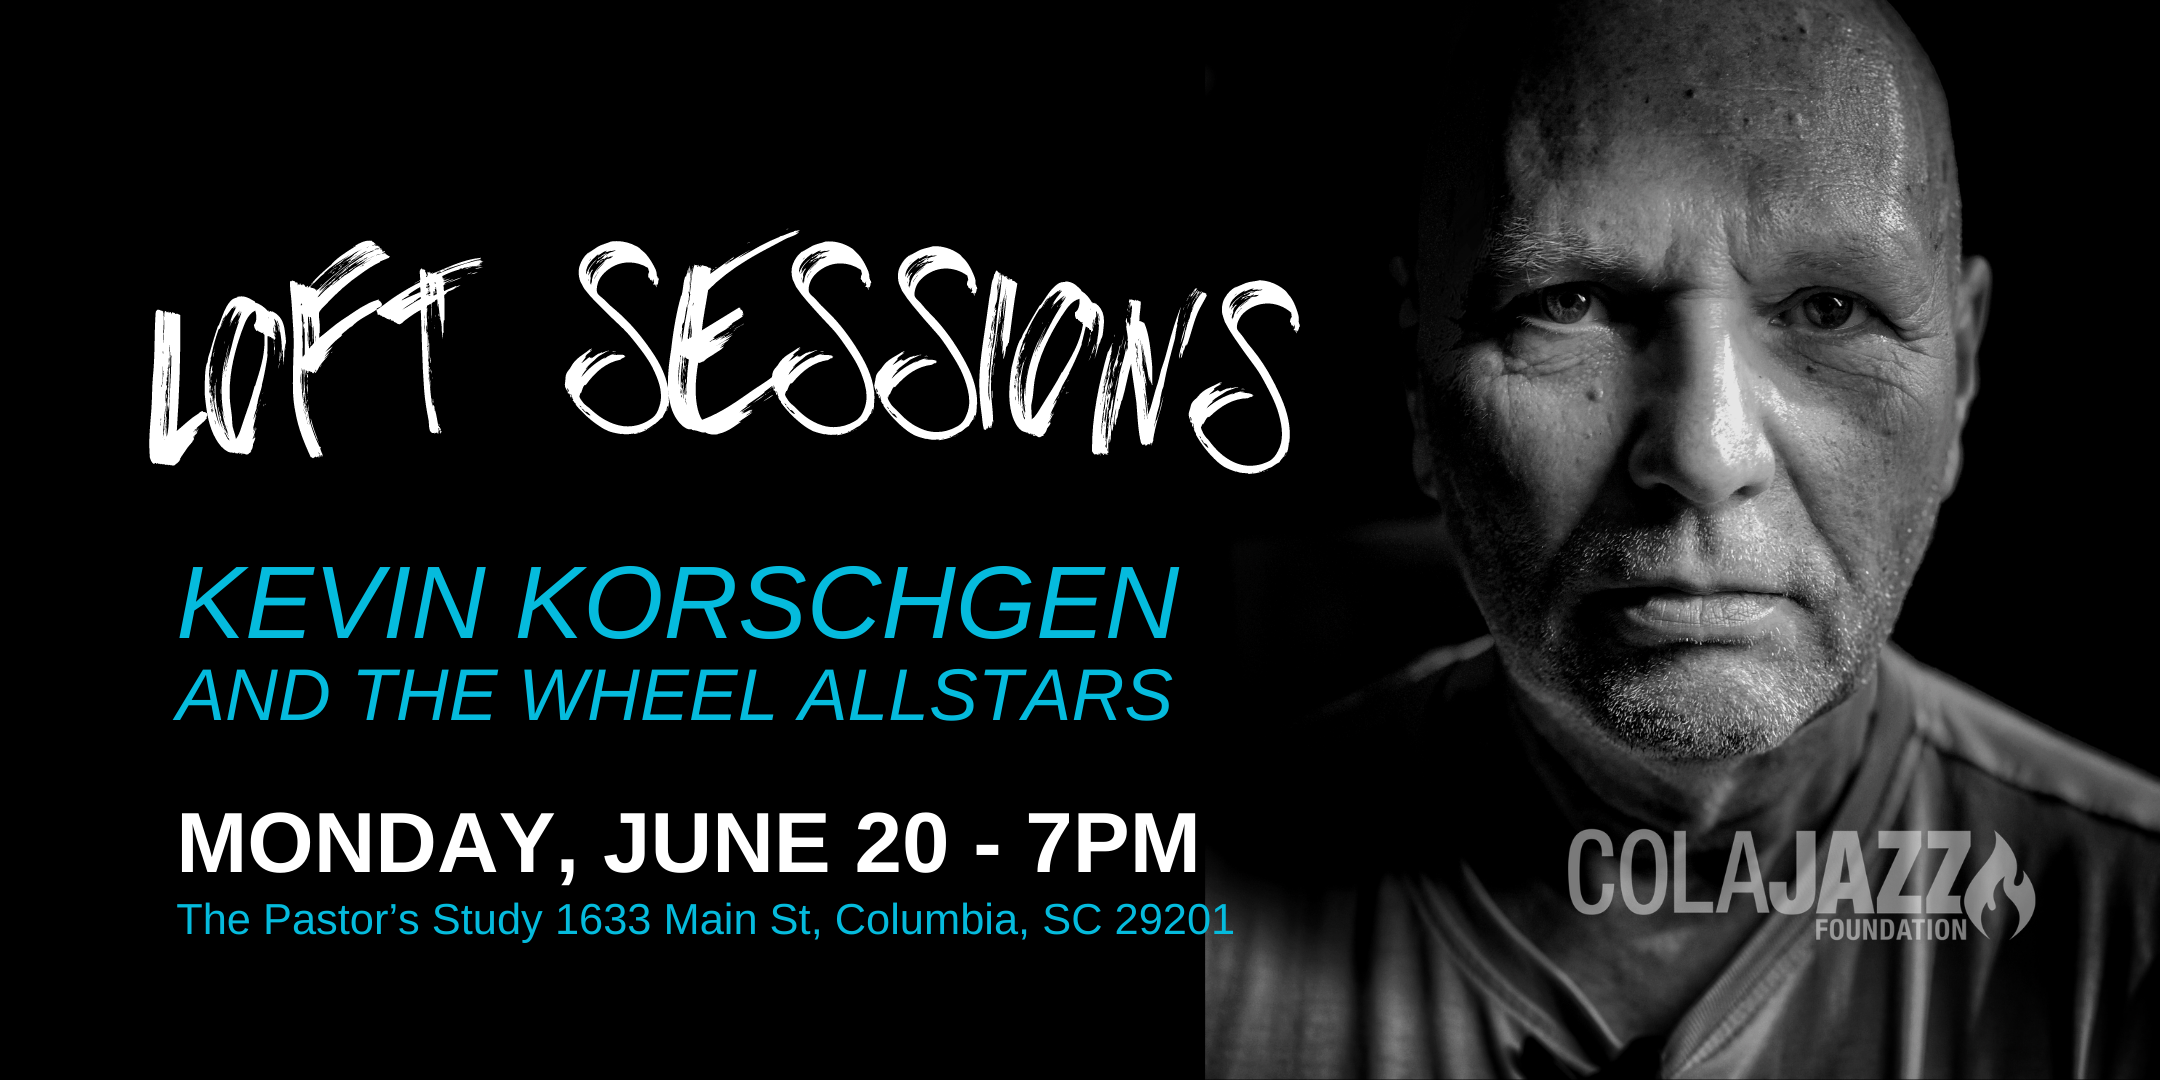 Loft Sessions Kevin Korschgen